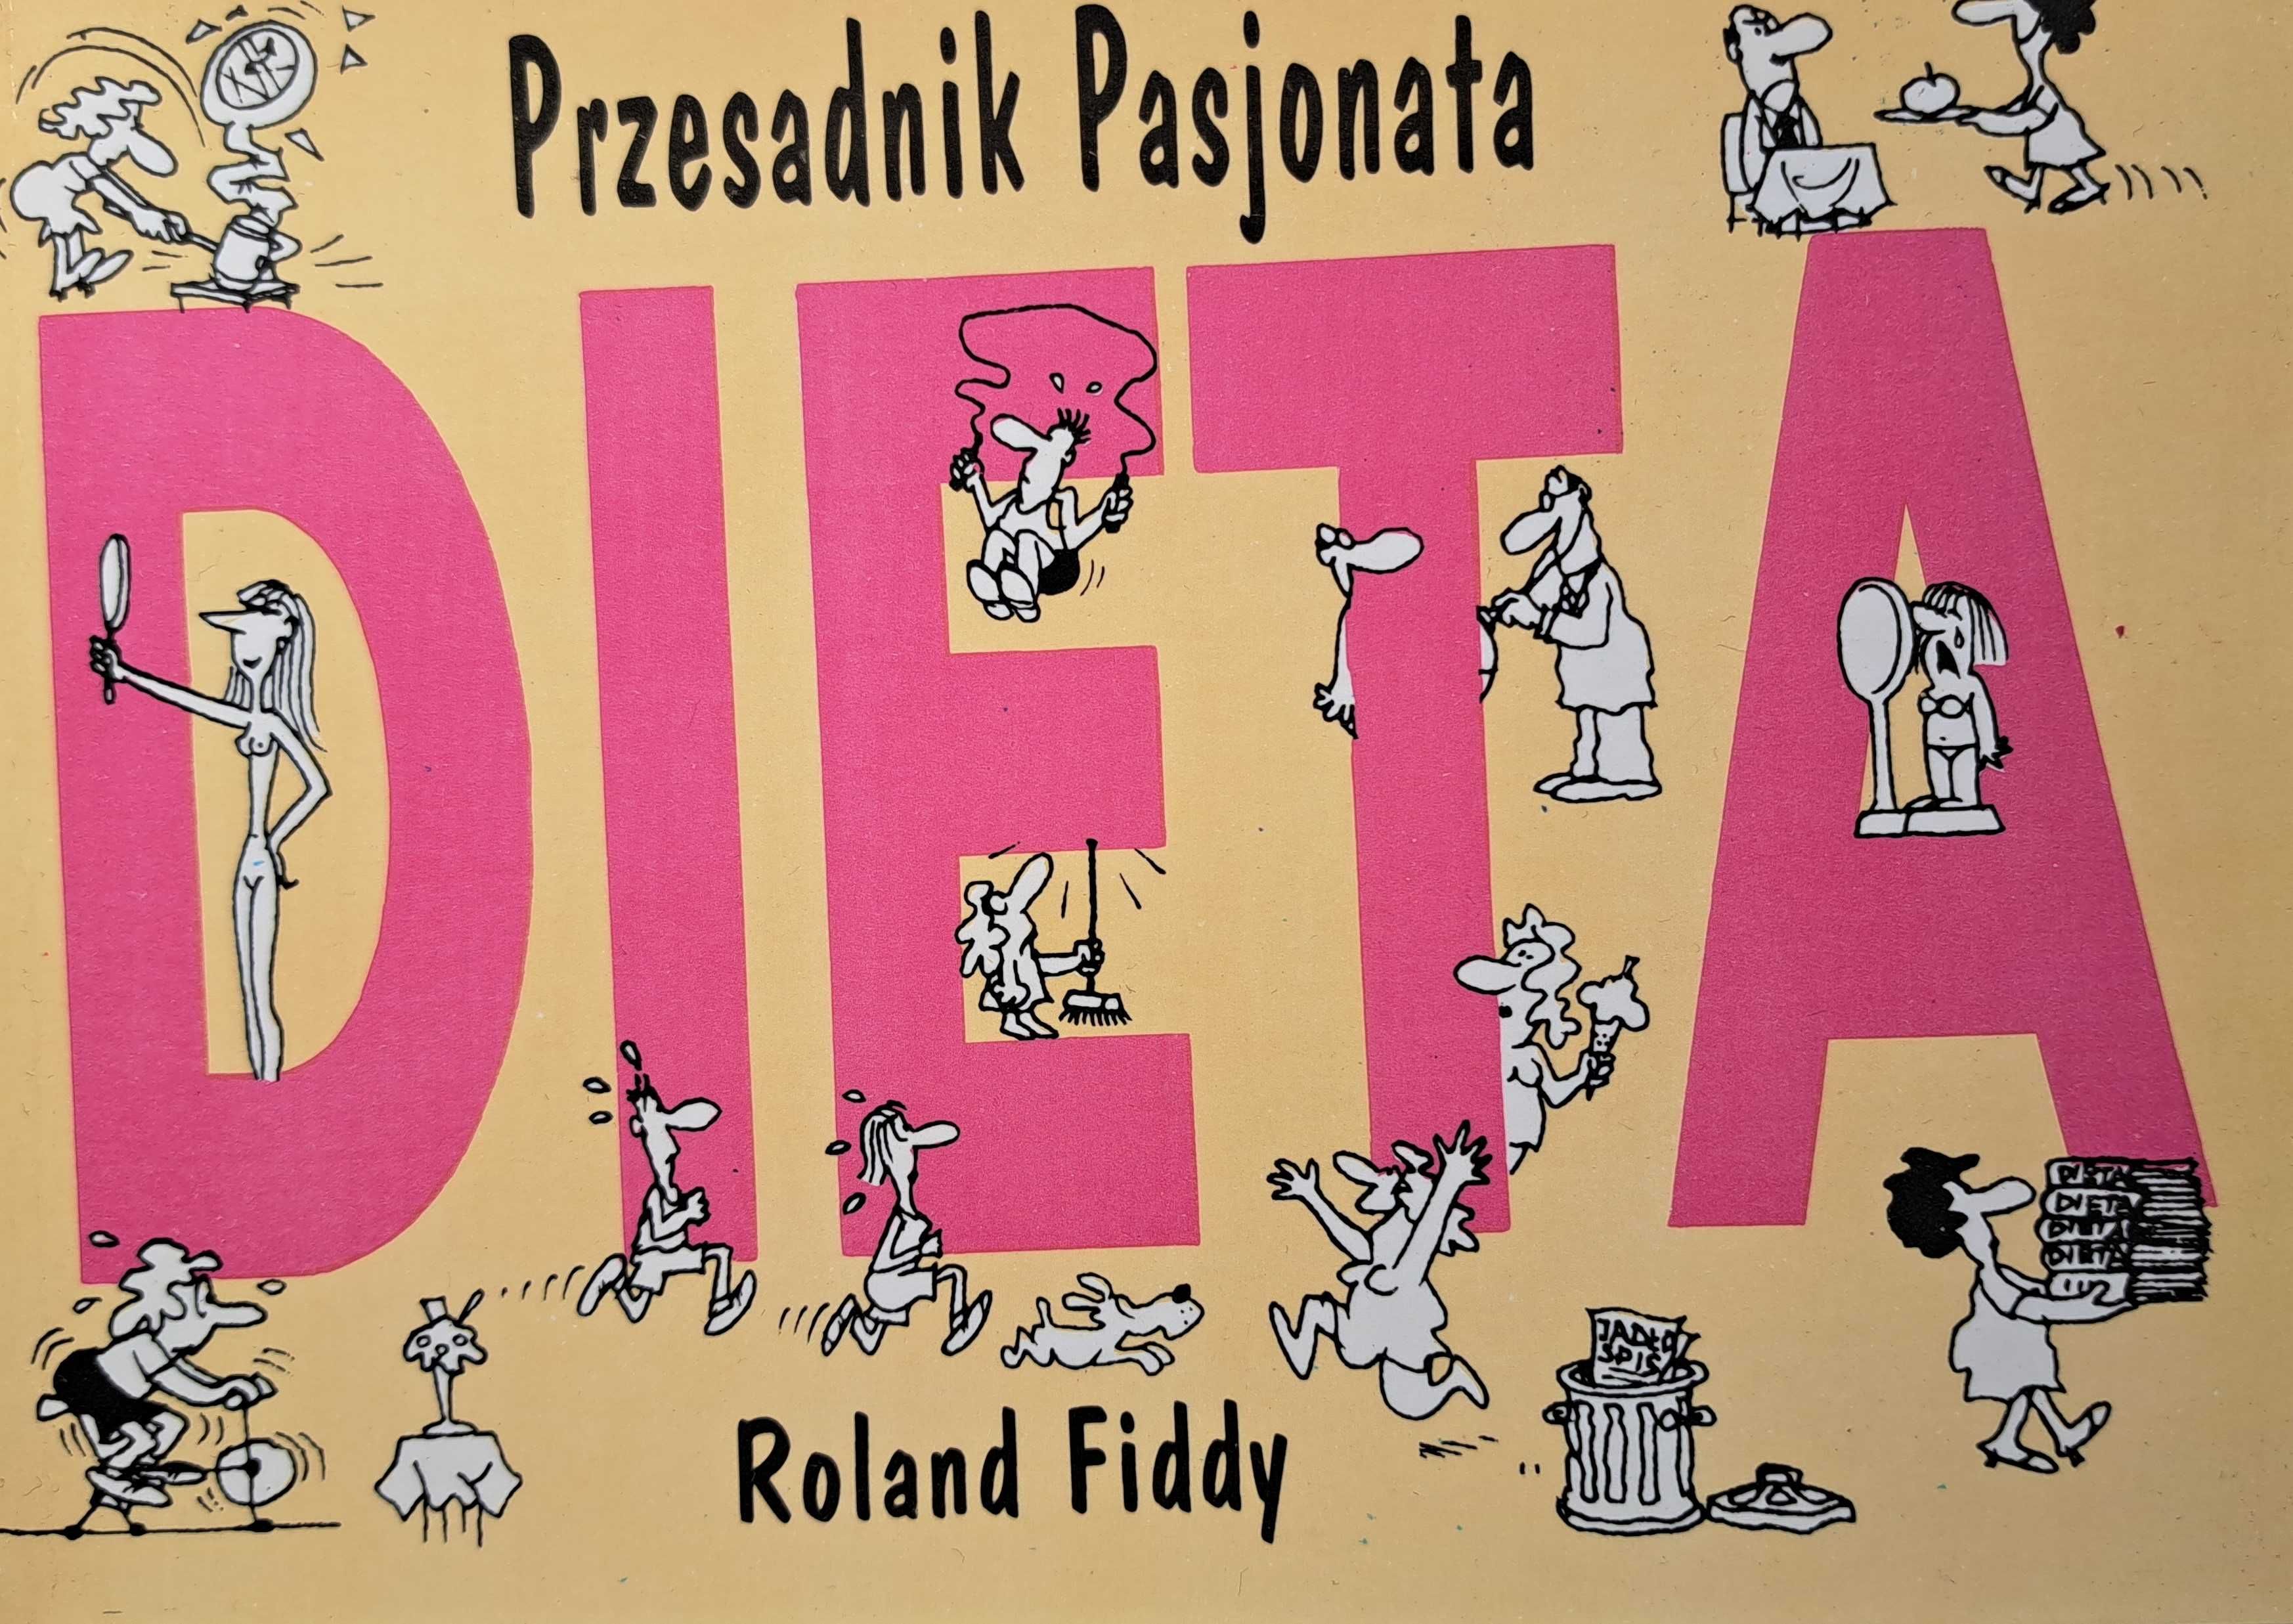 Roland Fiddy "Poradnik Pasjonata. Dieta"